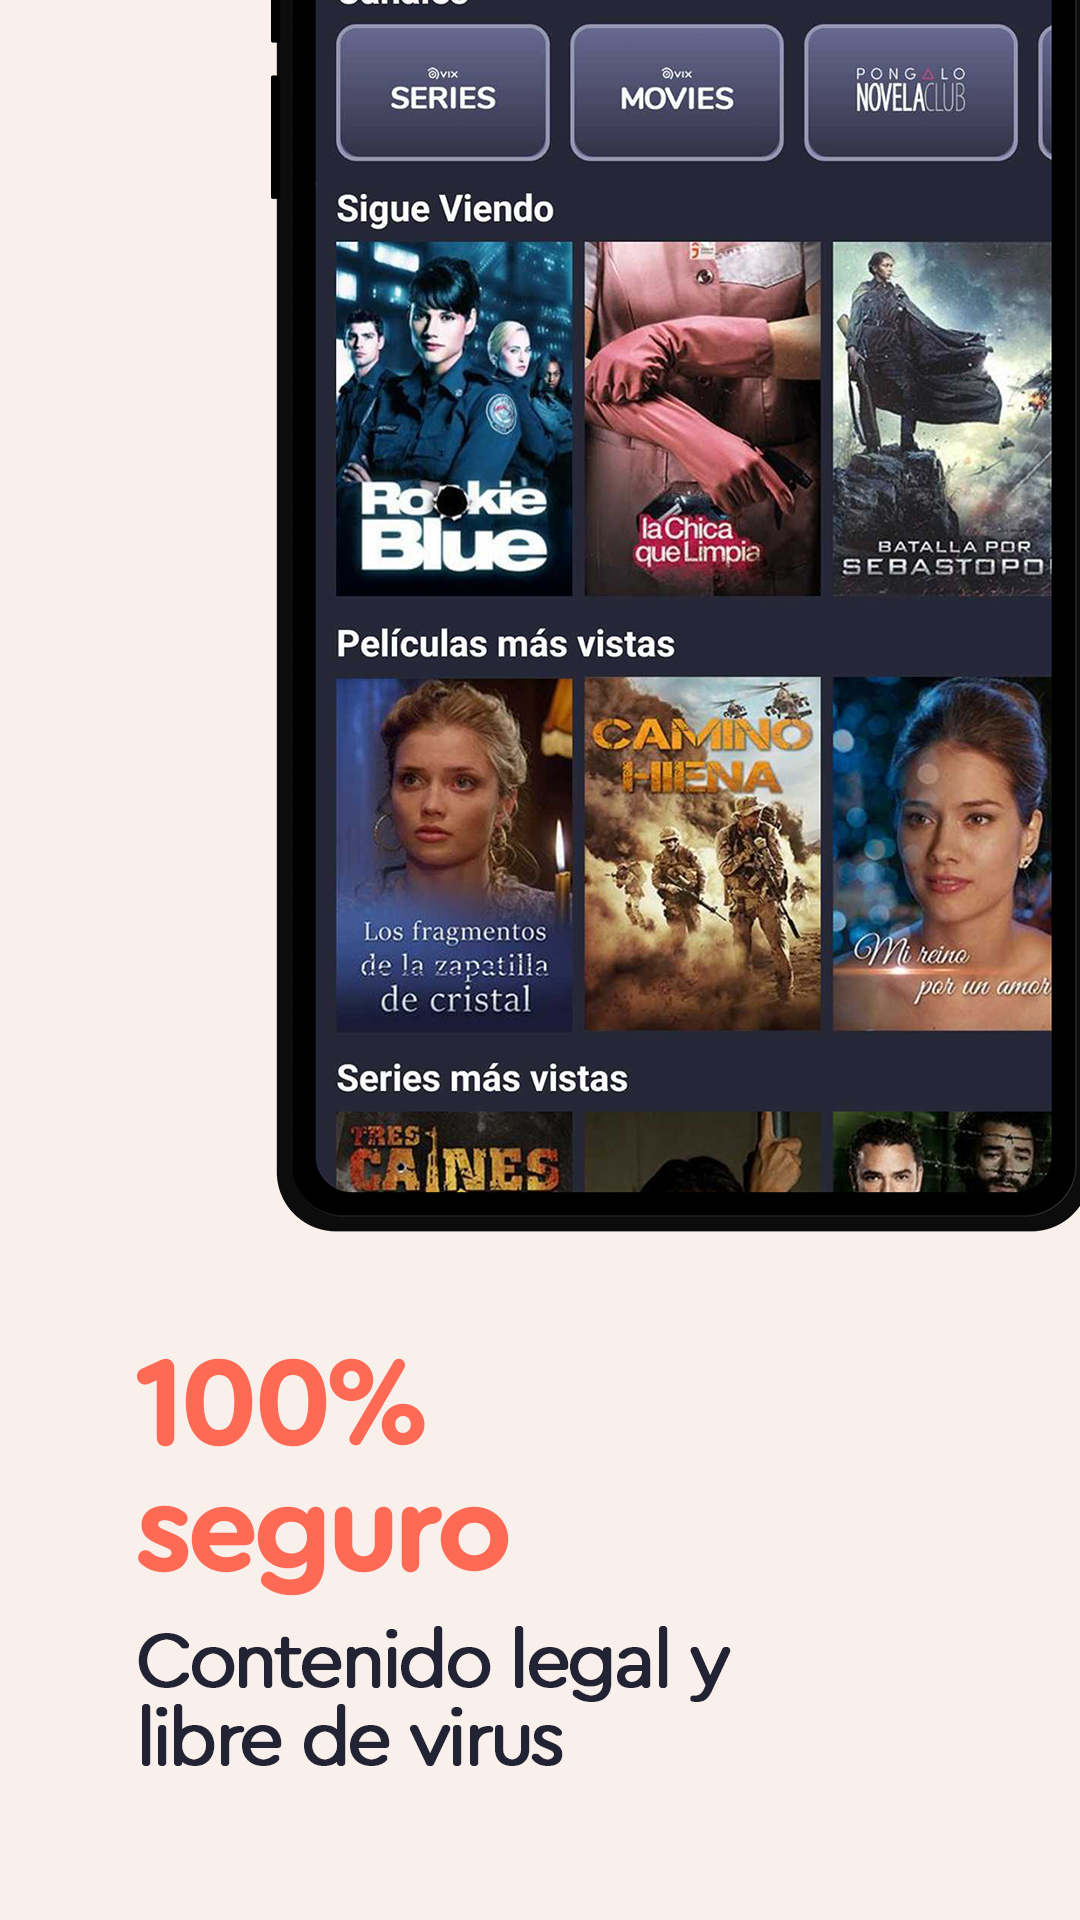 VIX - Cine y TV en Español APK 5.4.2 for Android – Download VIX - Cine y TV  en Español XAPK (APK Bundle) Latest Version from APKFab.com